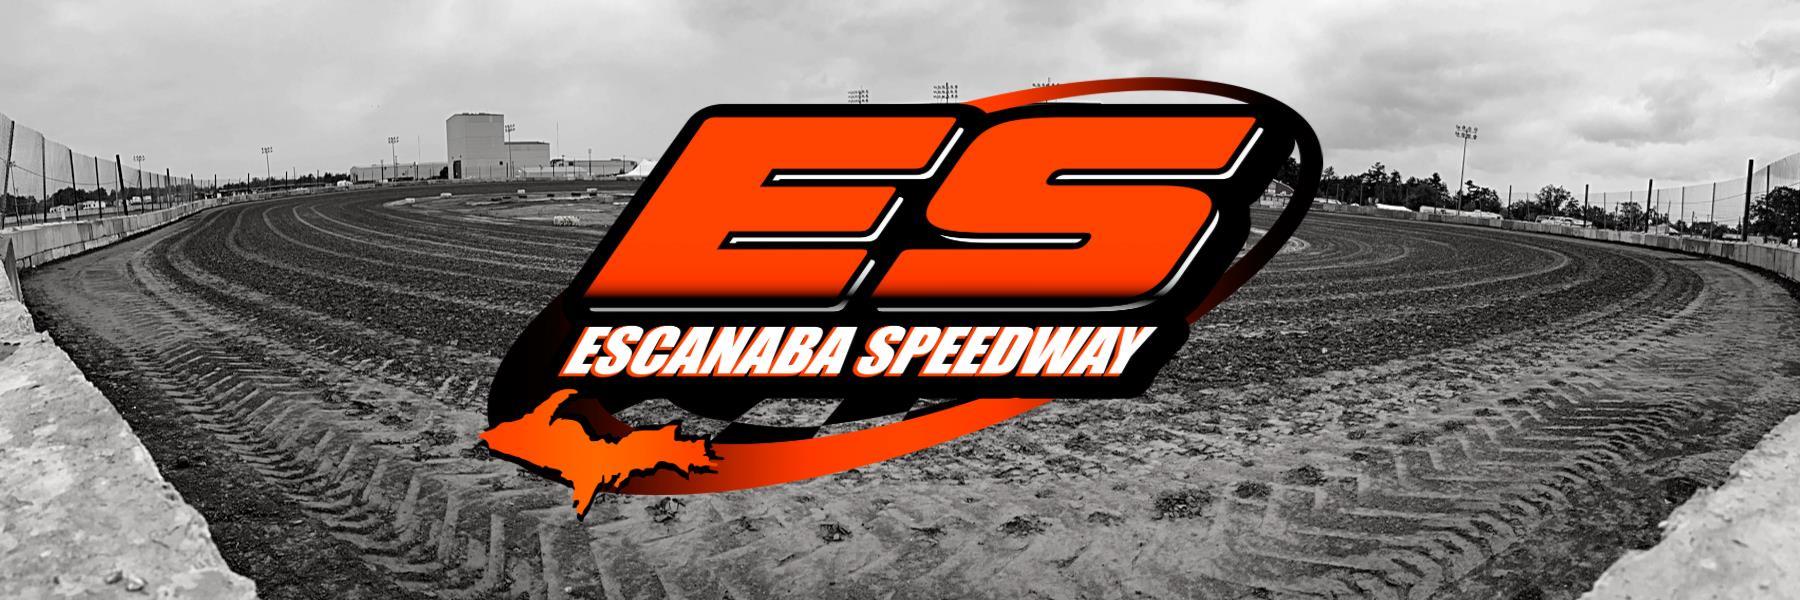 9/18/2021 - Escanaba Speedway